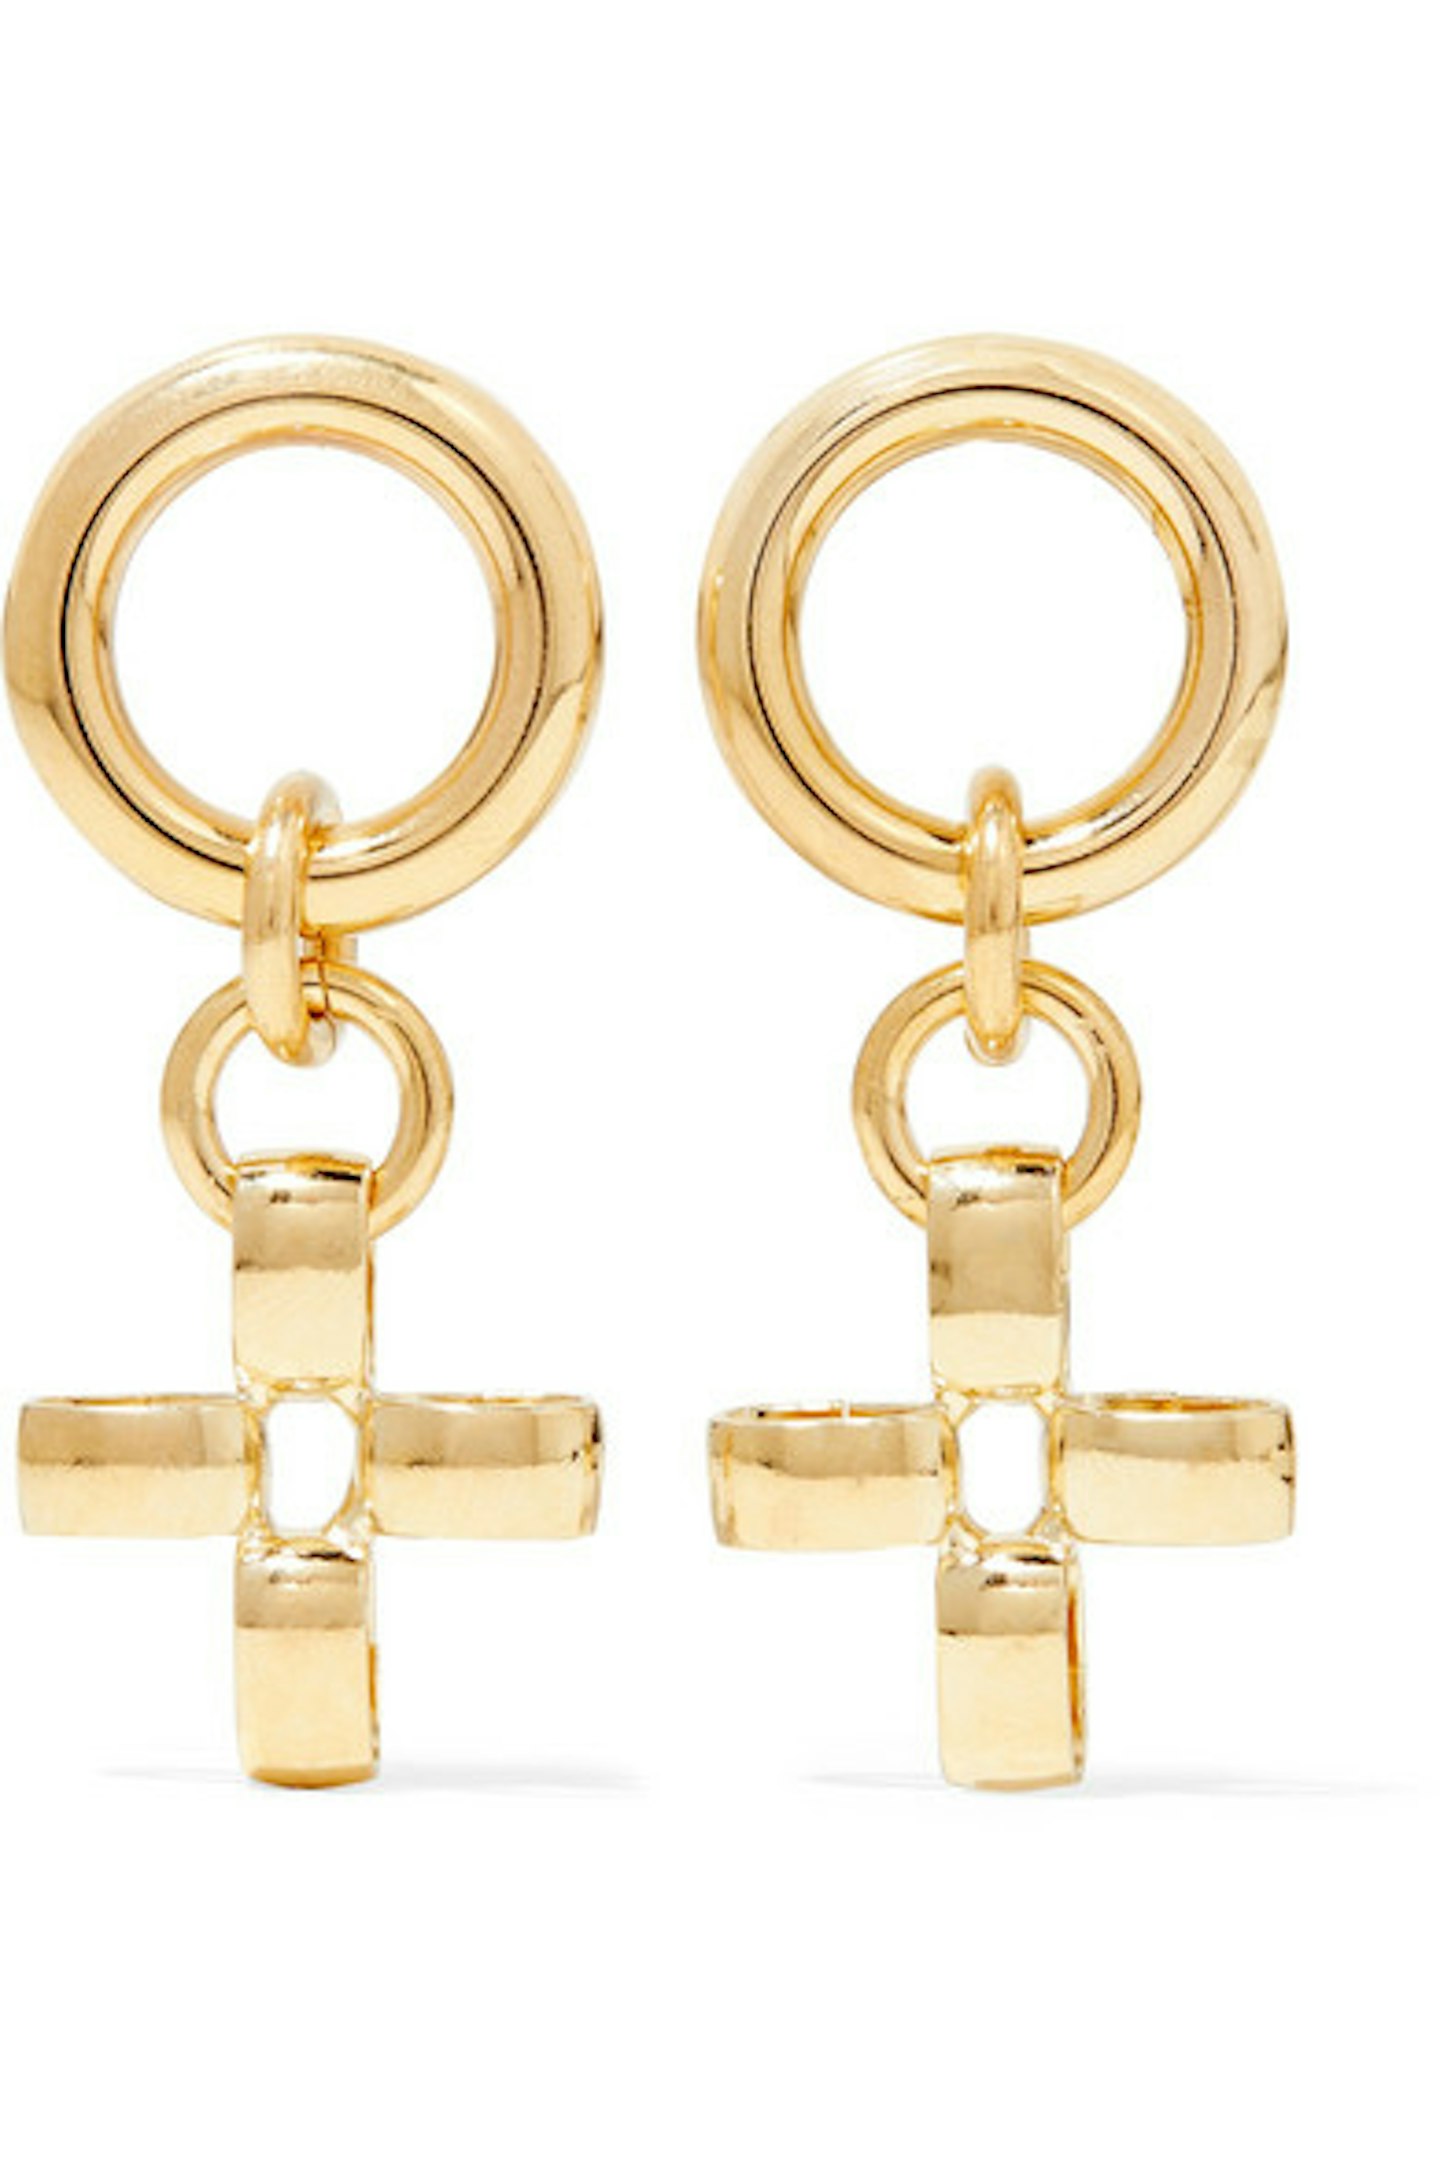 Laura Lombardi + Net Sustain, Gold-Tone Earrings, £134